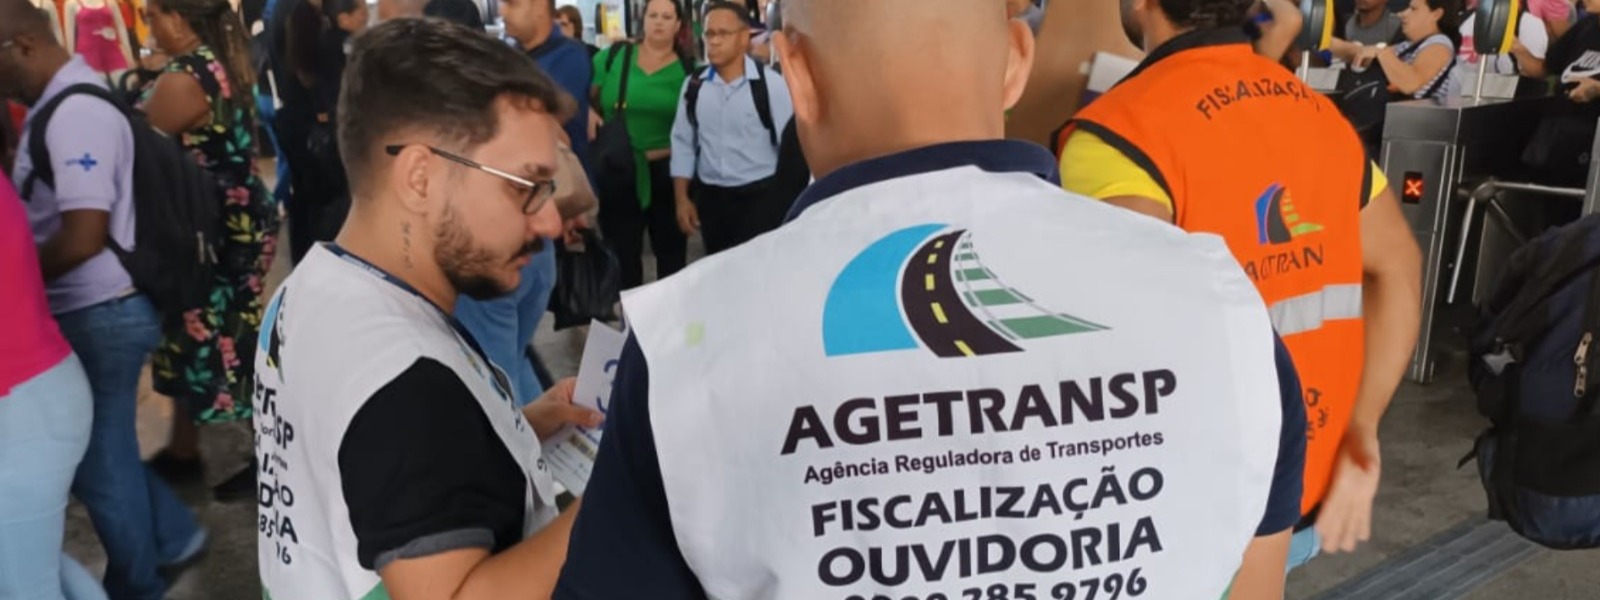 Agetransp leva Ouvidoria Itinerante para estações do Metrô e Supervia